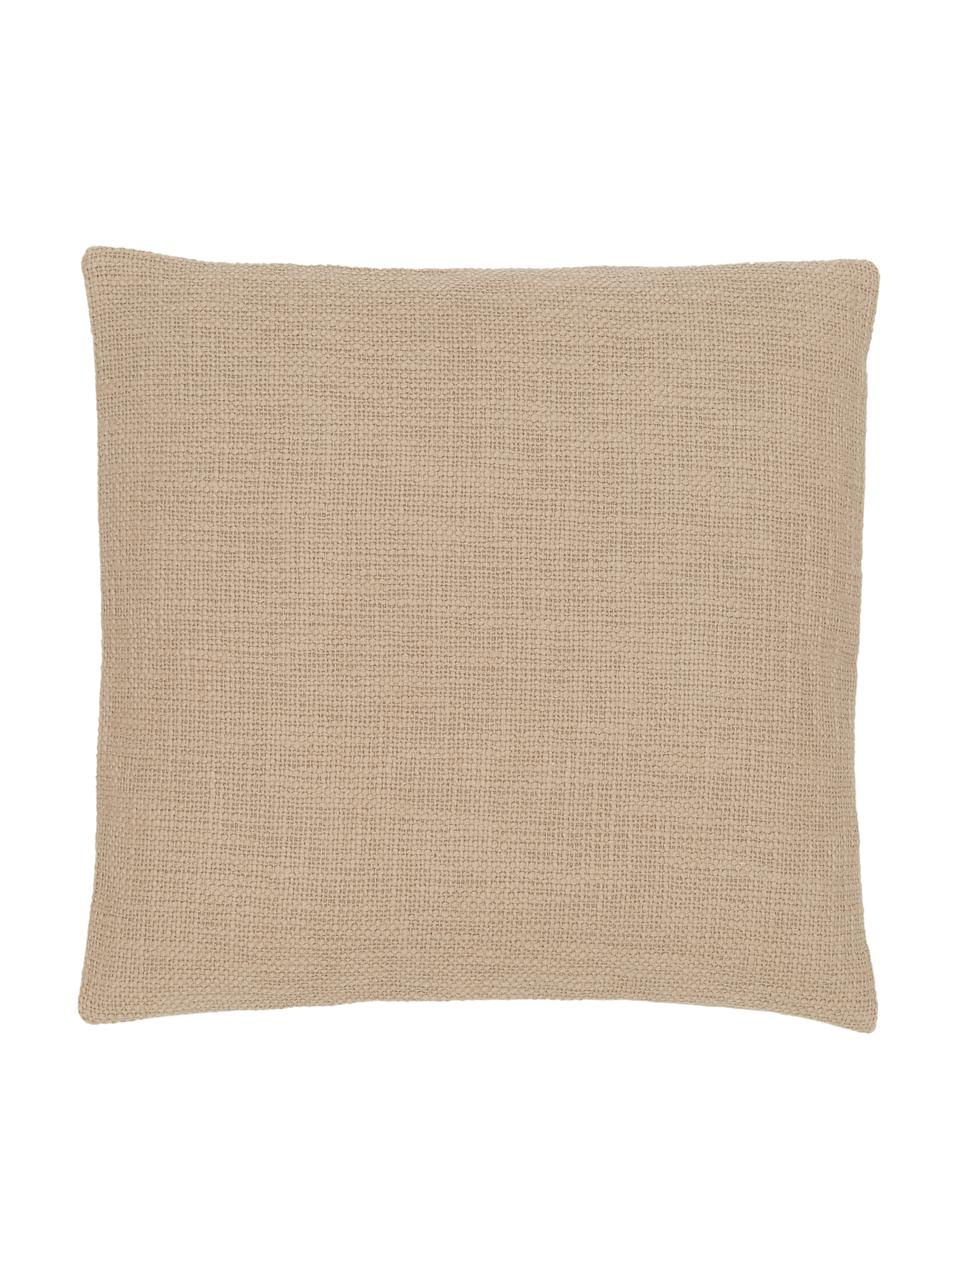 Poszewka na poduszkę Anise, 100% bawełna, Beżowy, S 45 x D 45 cm